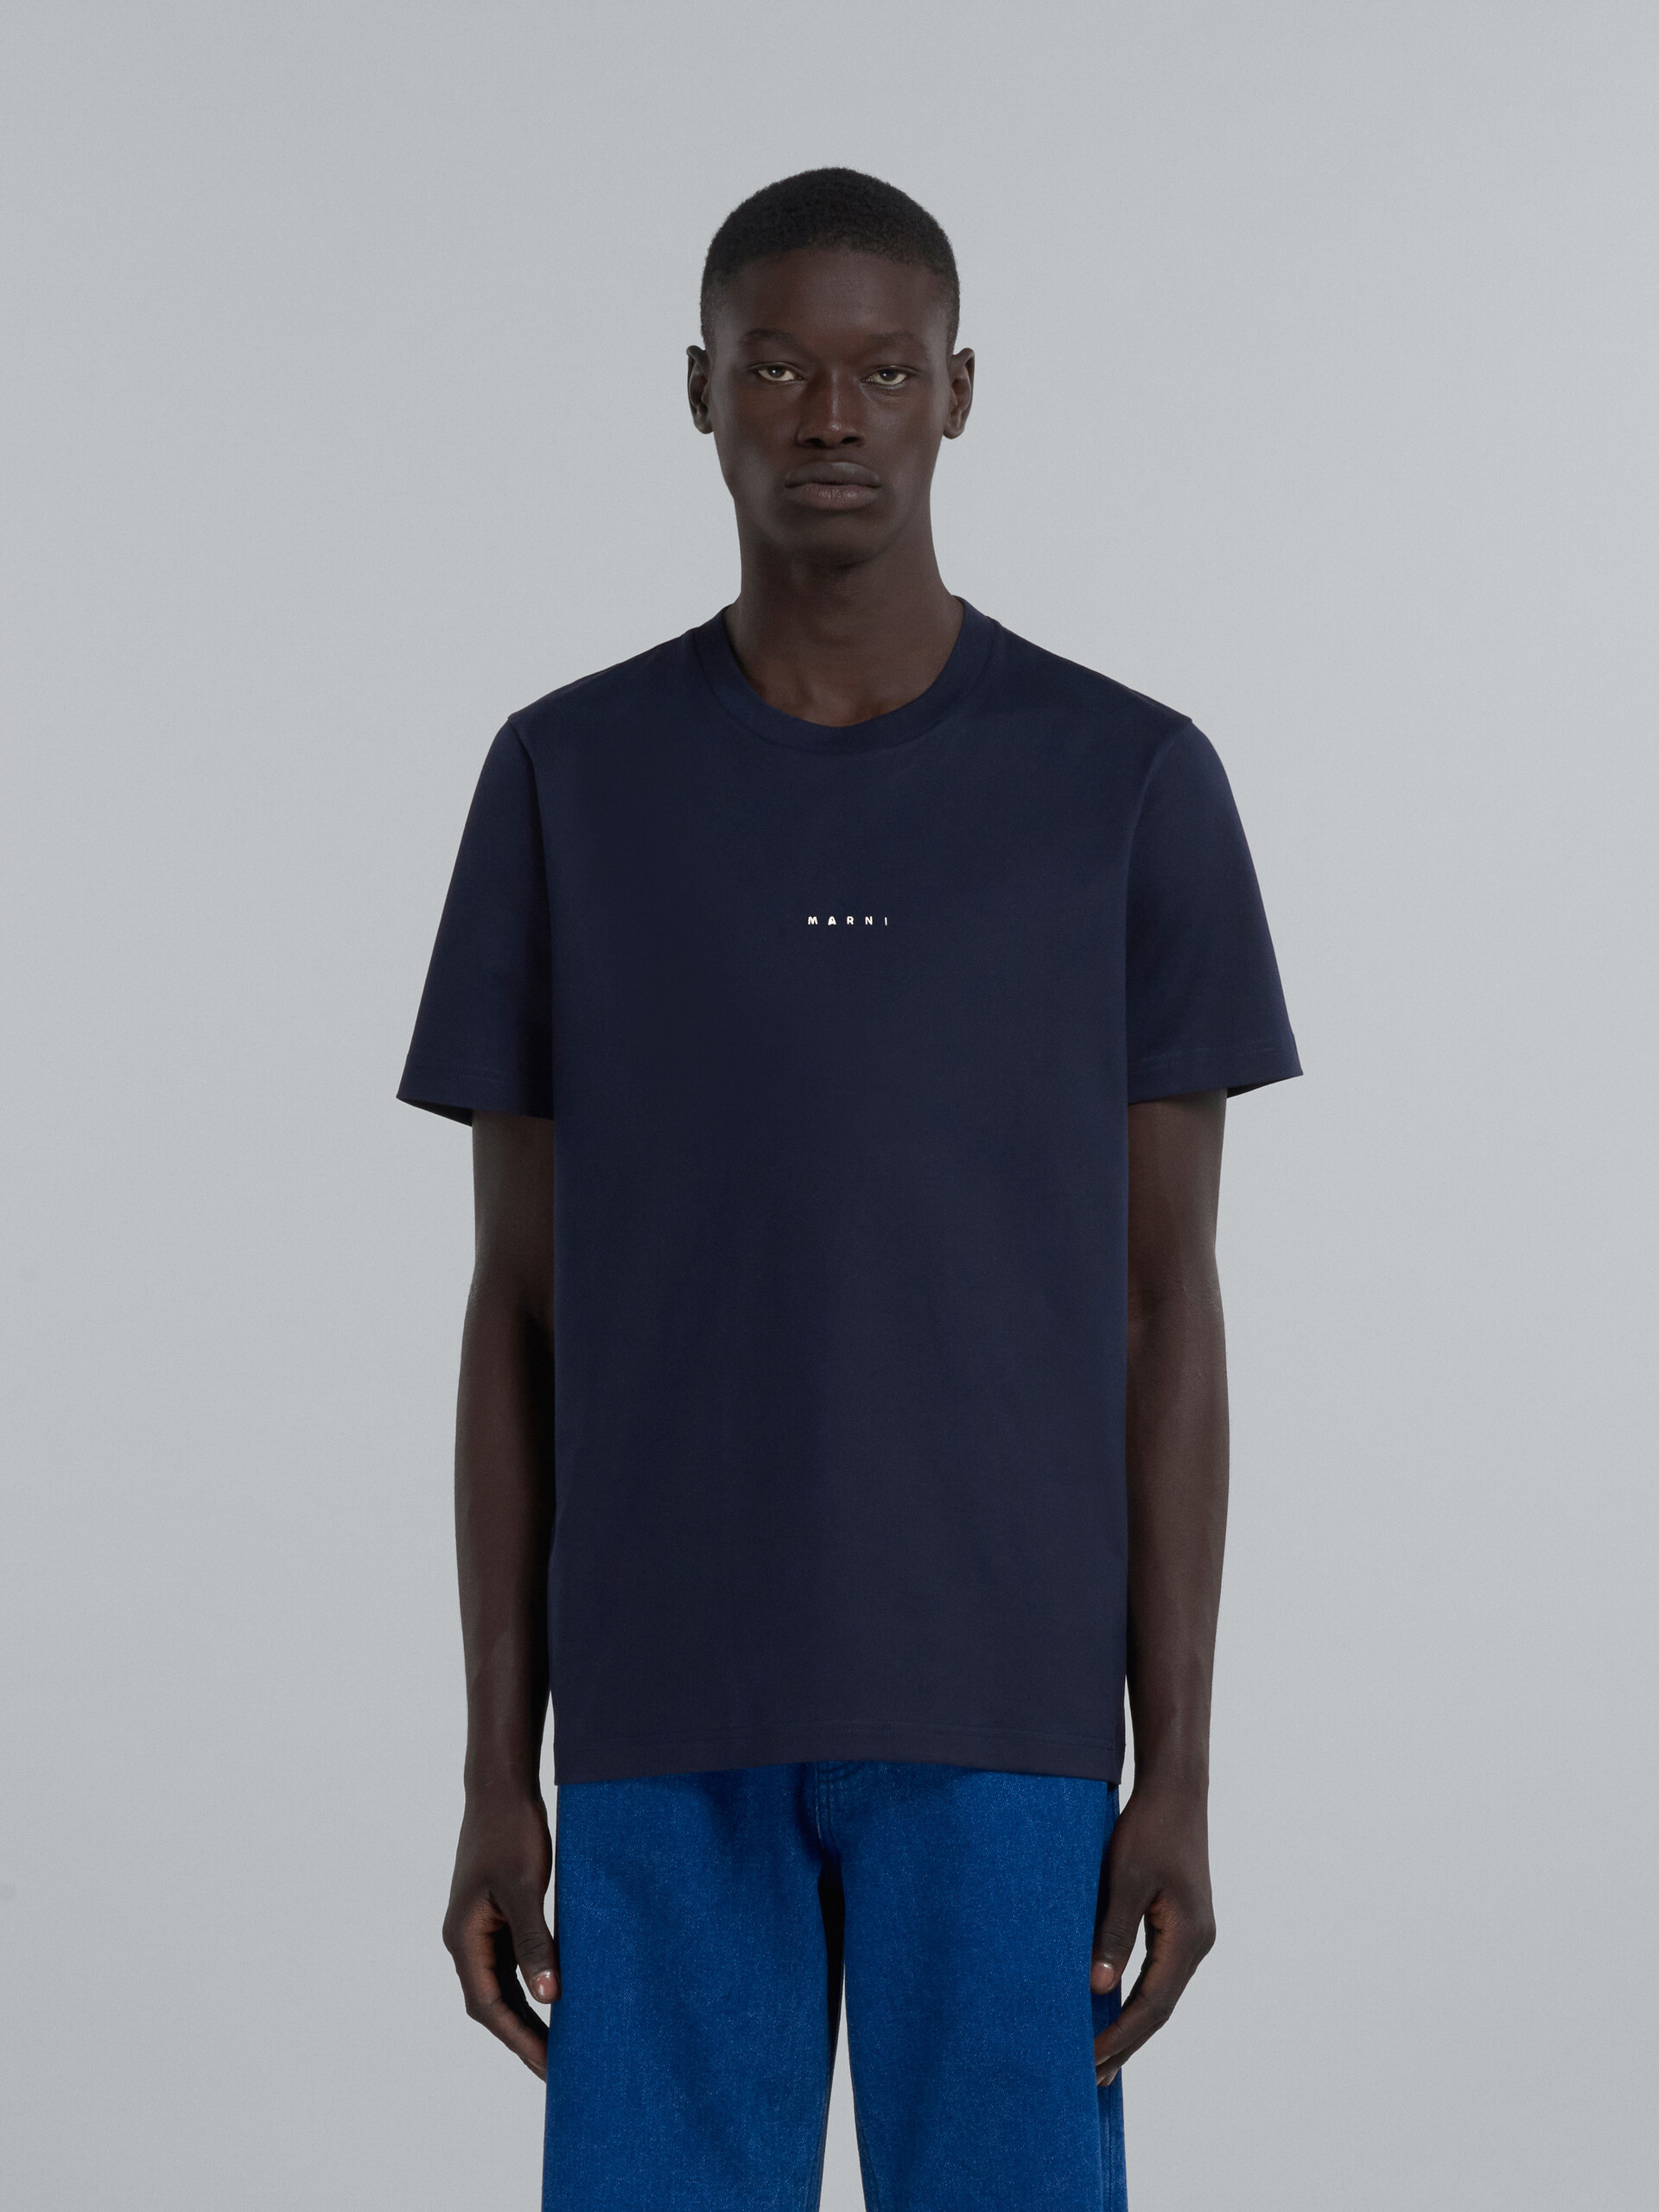 Camiseta azul oscuro de algodón ecológico con logotipo - Camisetas - Image 2